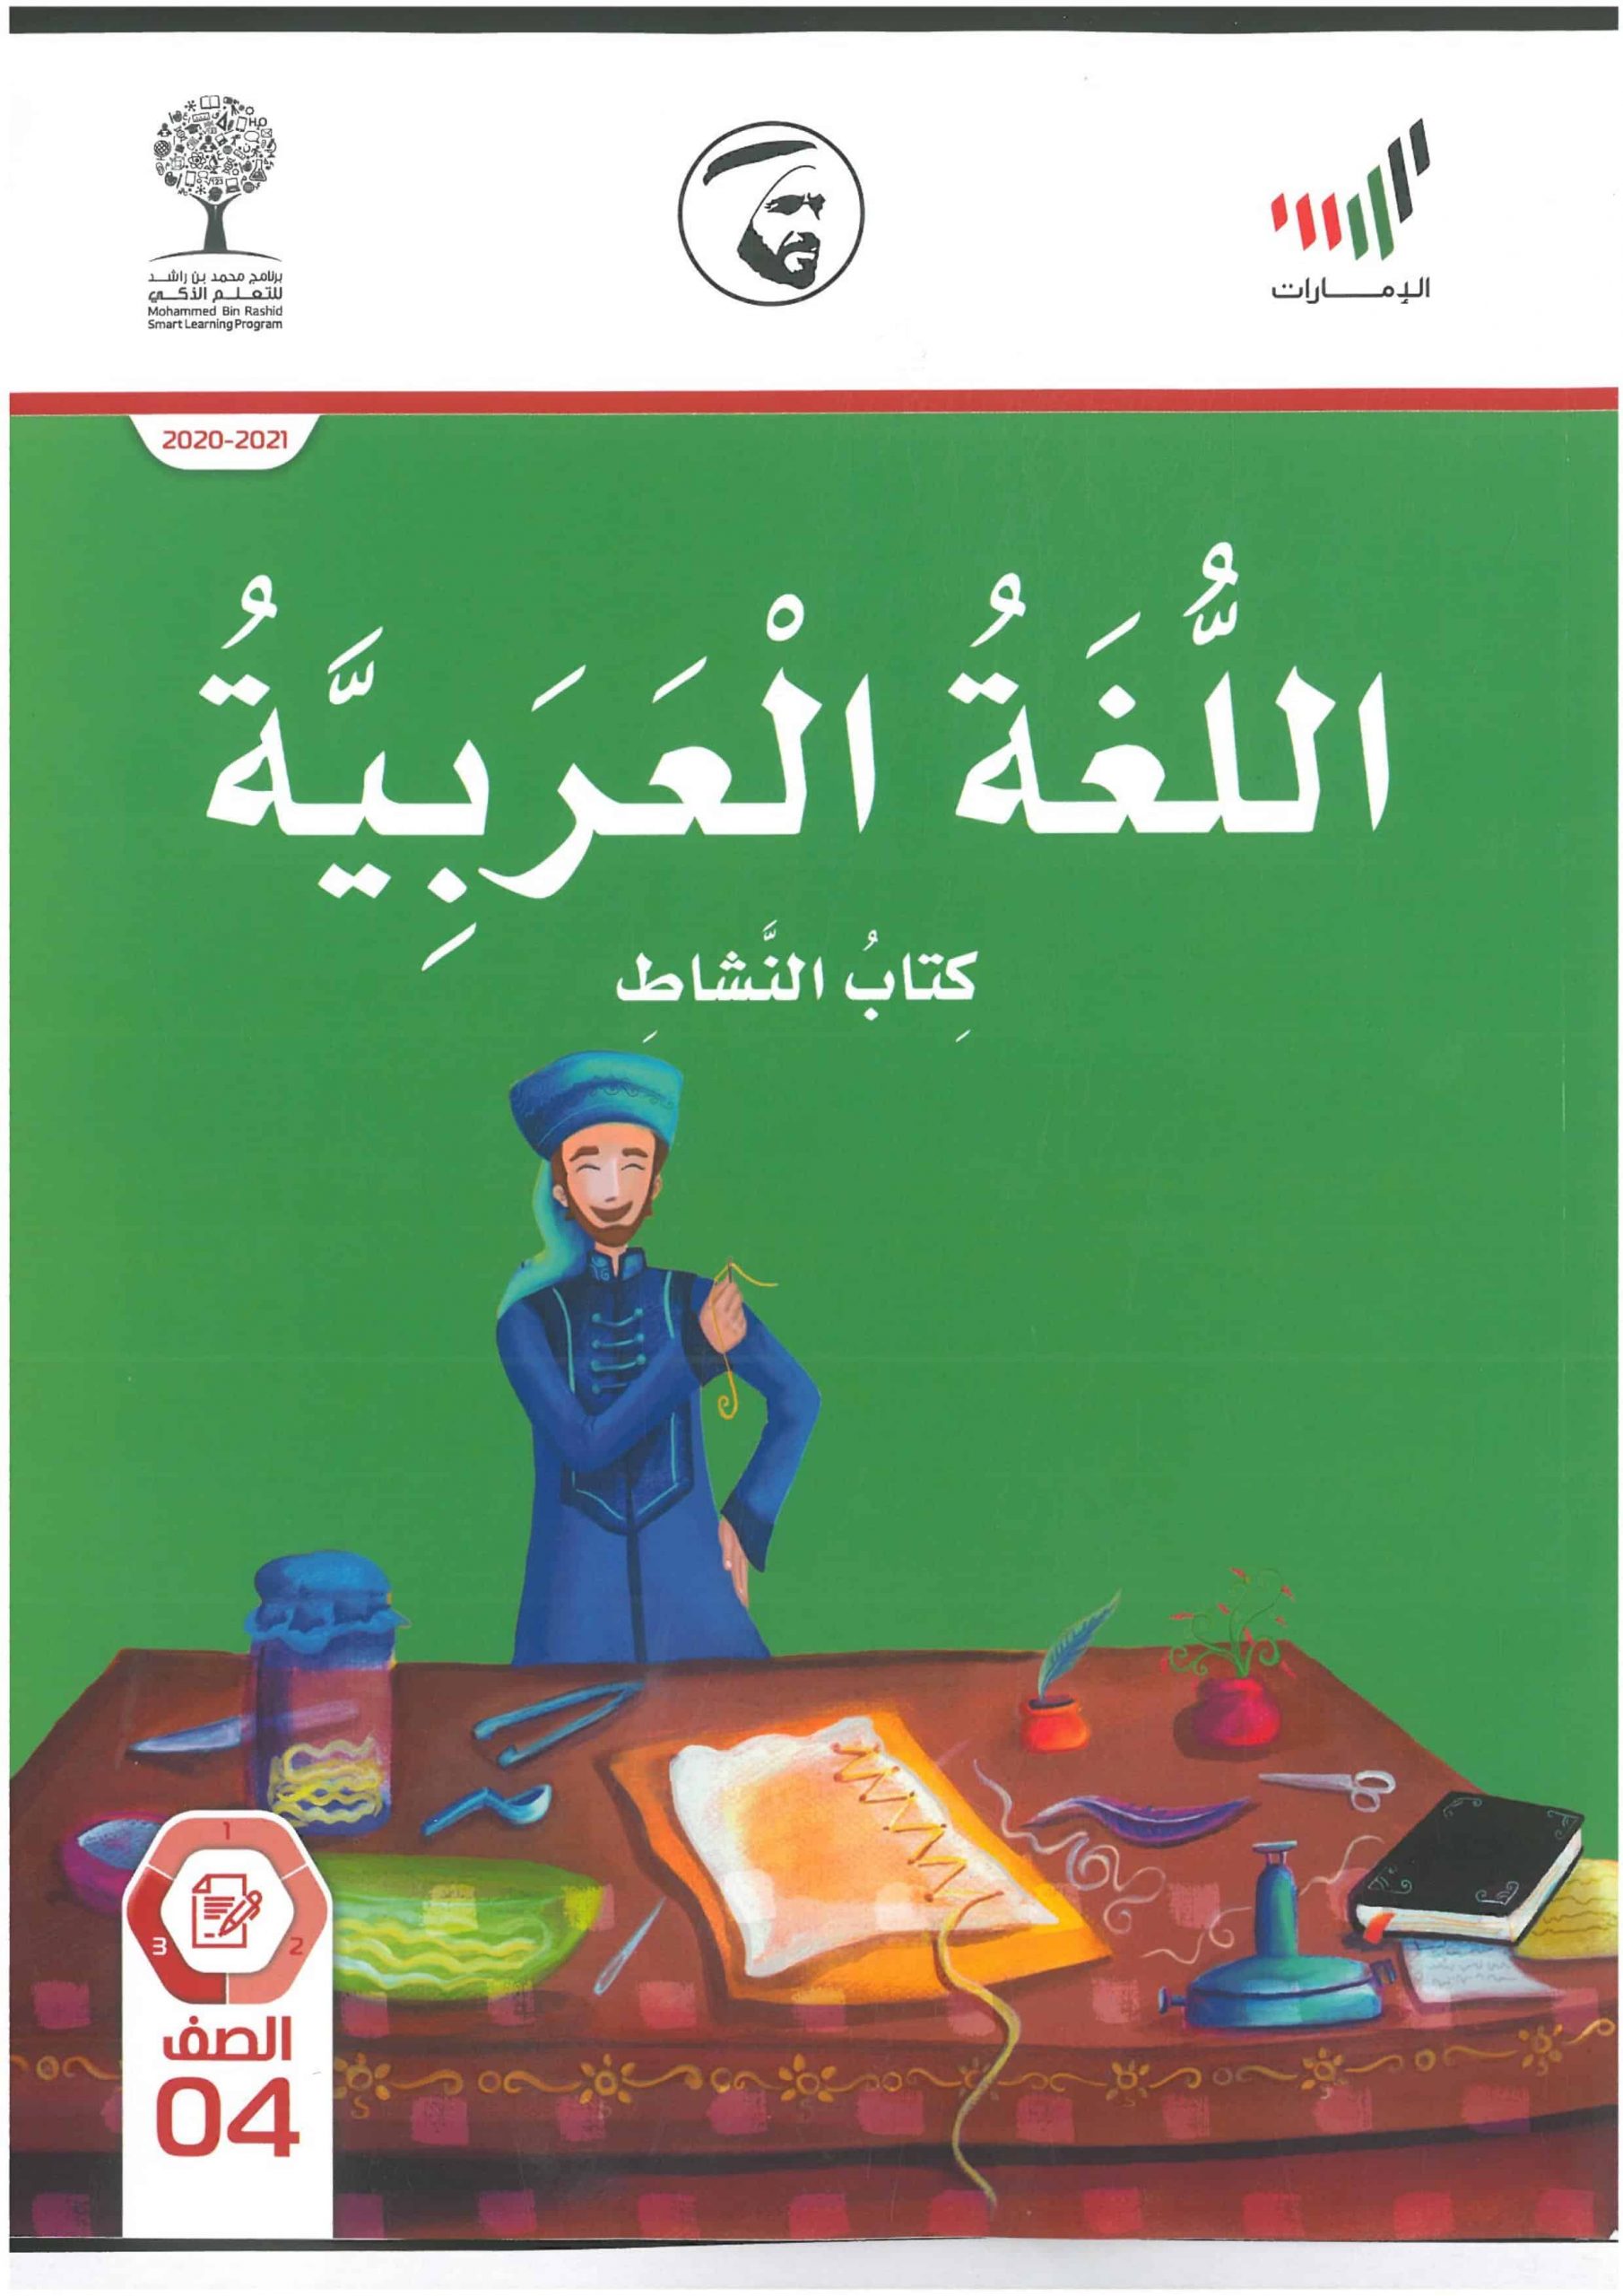 كتاب النشاط الفصل الدراسي الثالث 2020-2021 الصف الرابع مادة اللغة العربية